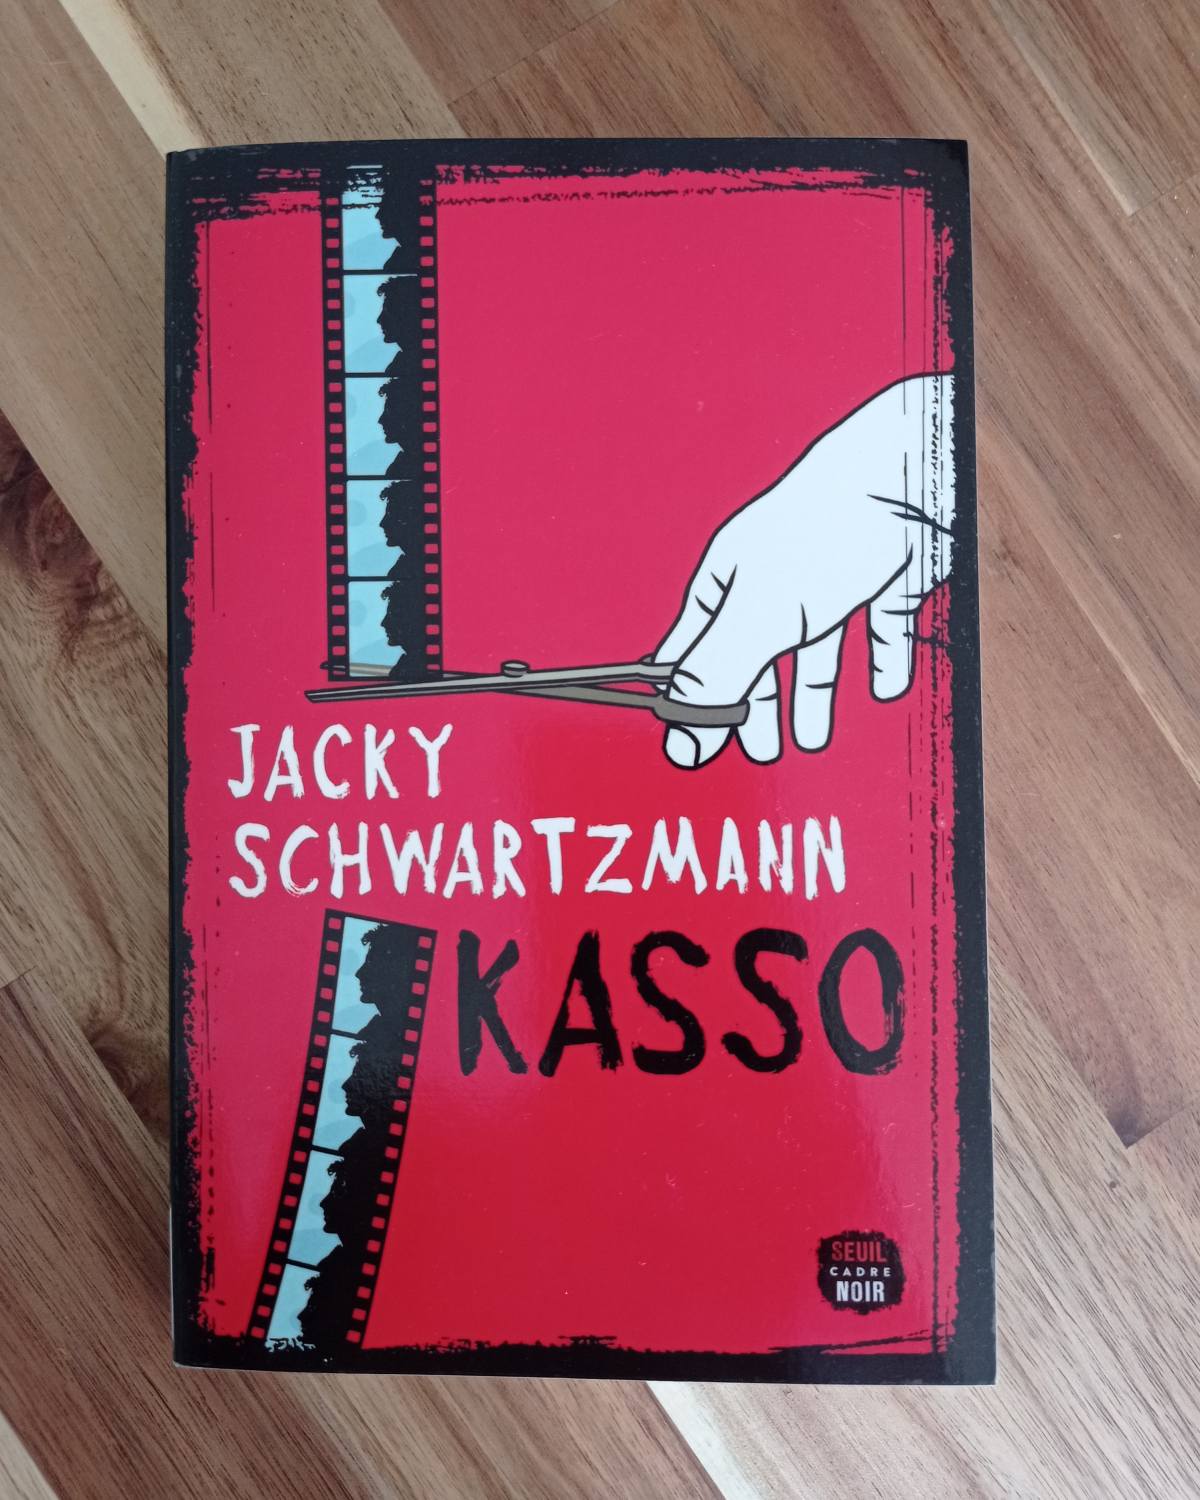 Kasso / Jacky Schwartzmann